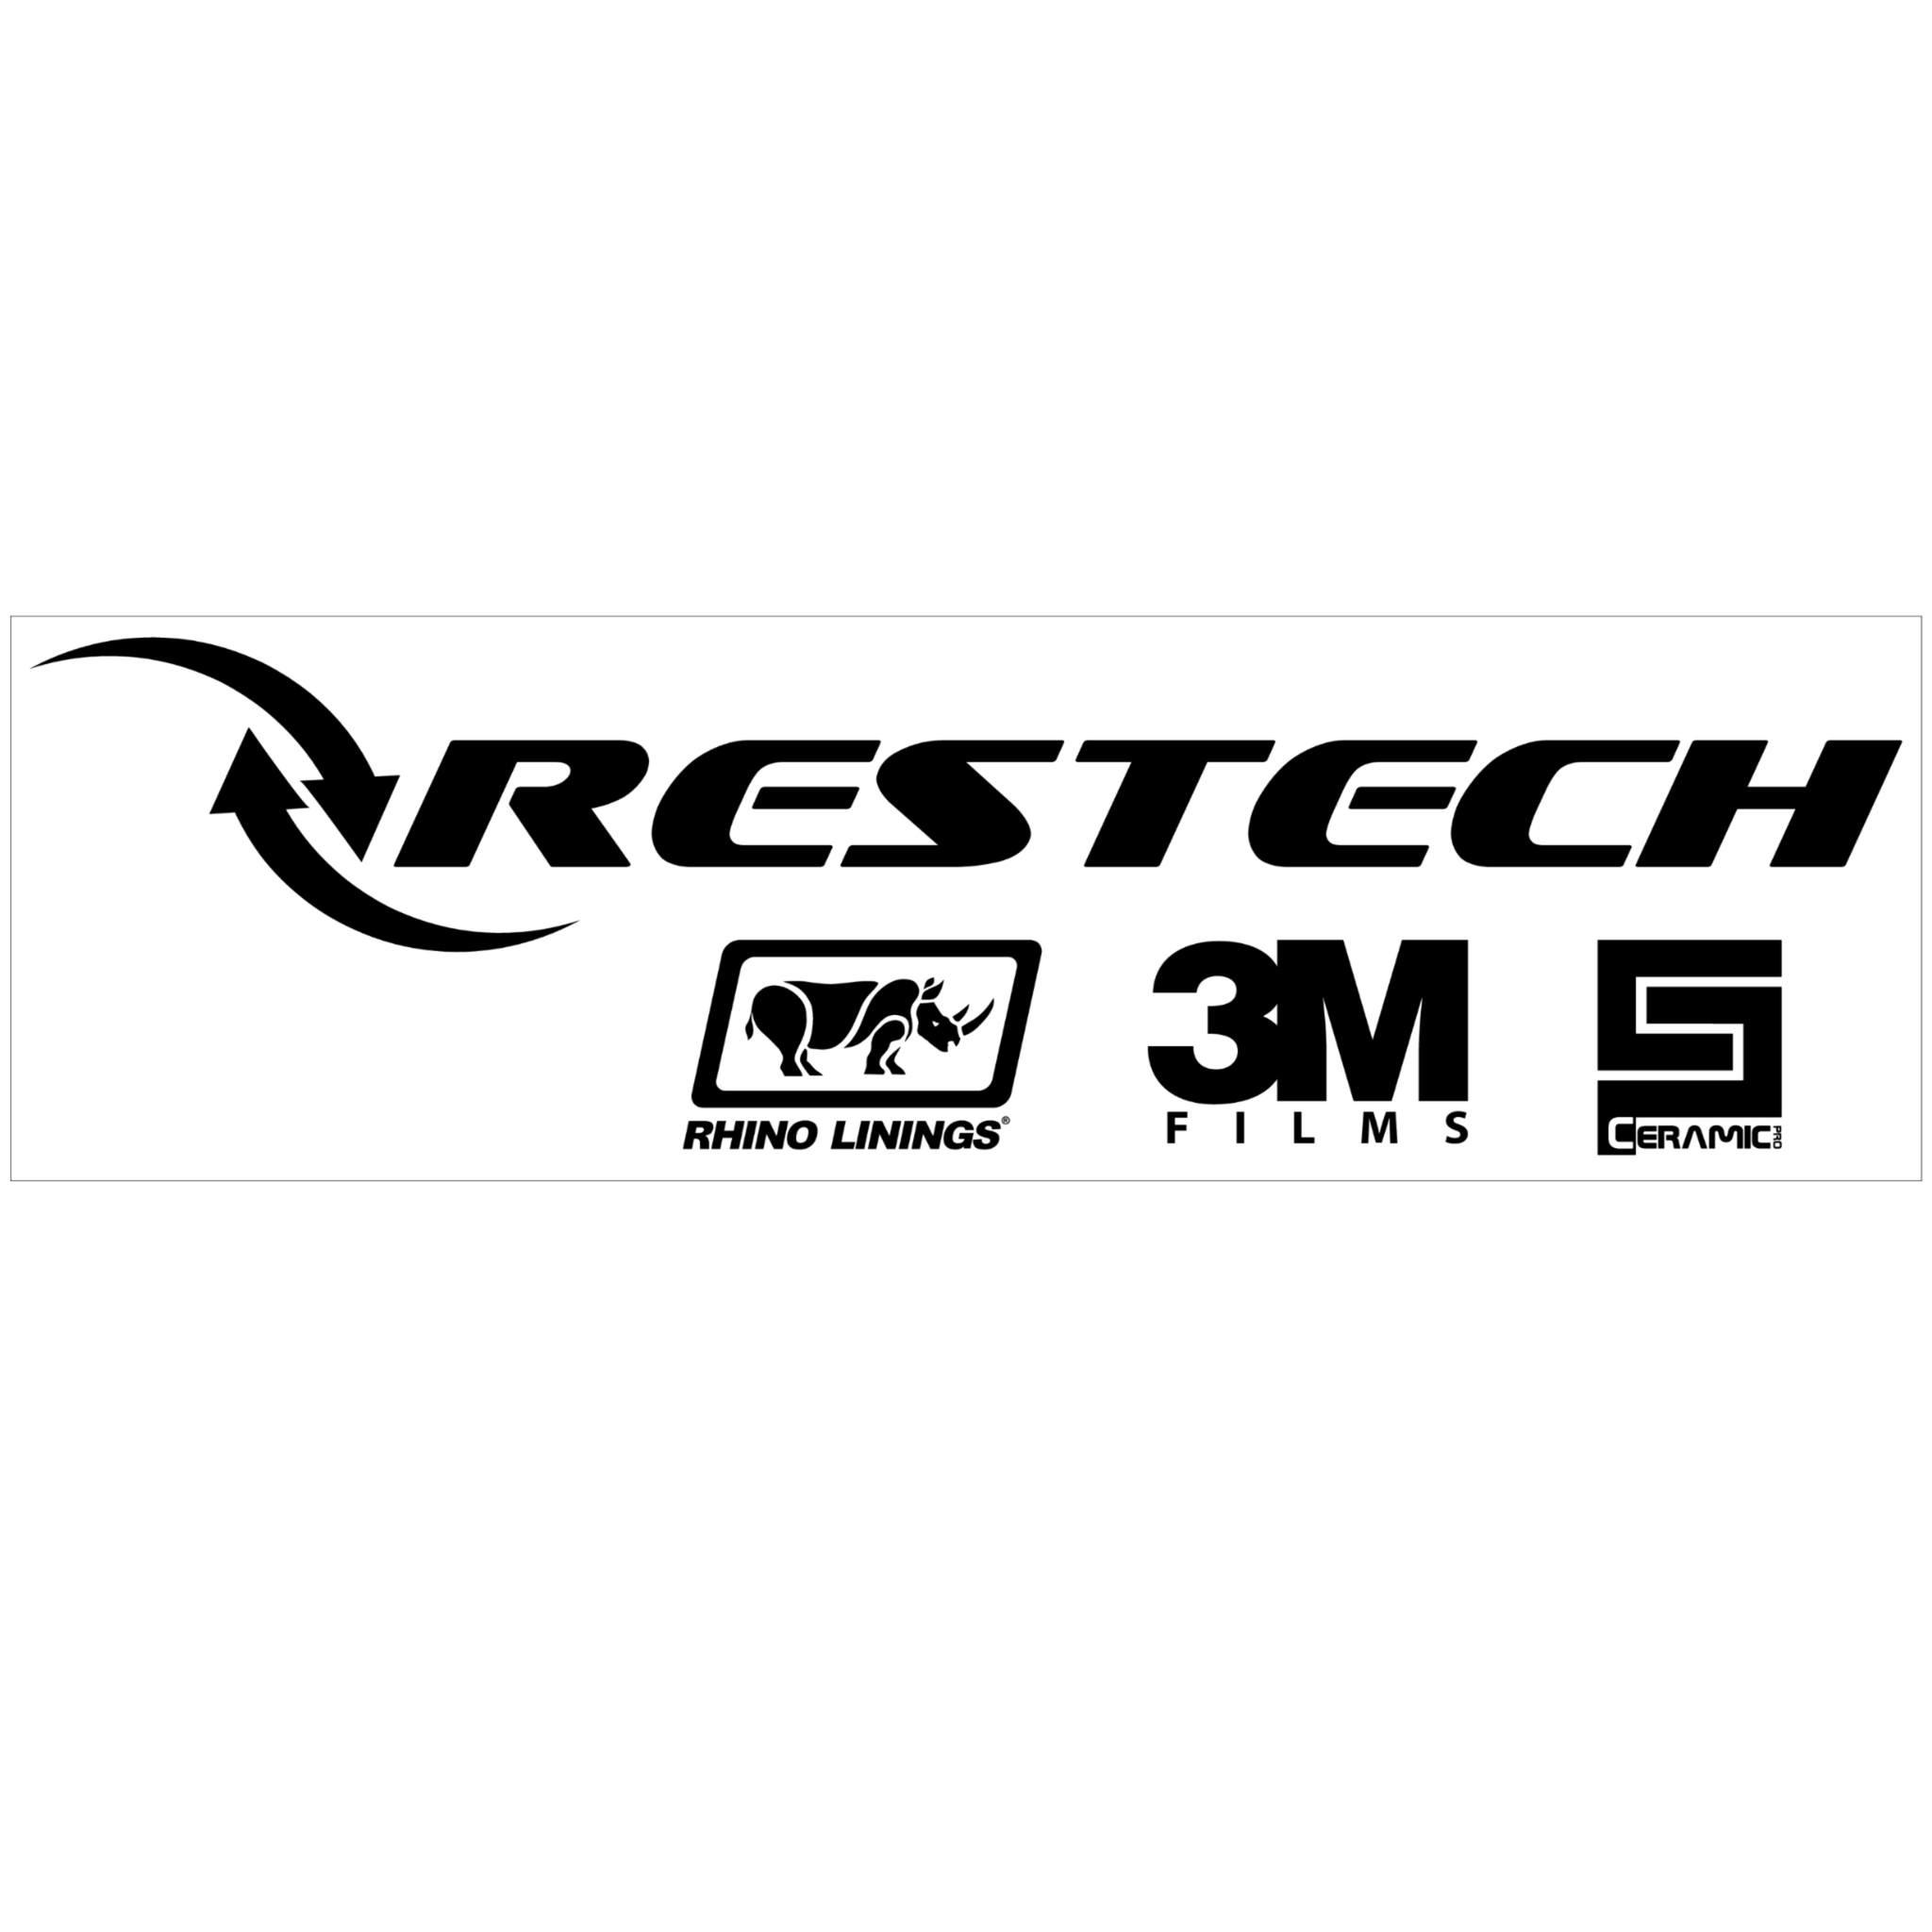 Restech - Everett, WA 98208 - (425)212-9895 | ShowMeLocal.com